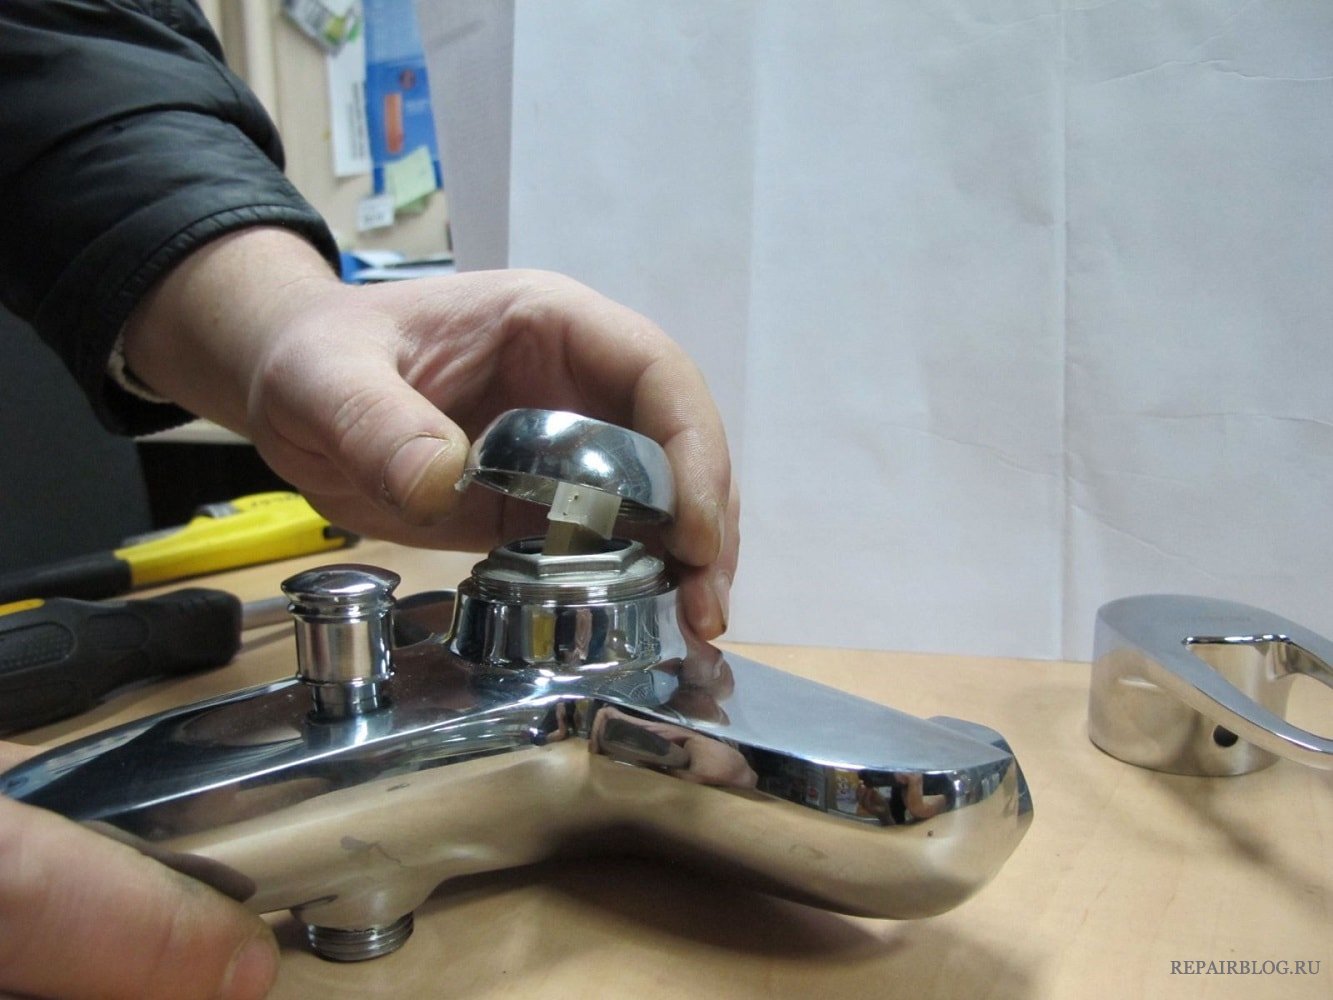 Особенности устройства крана-буксы для смесителя, самостоятельная замена и ремонт устройства